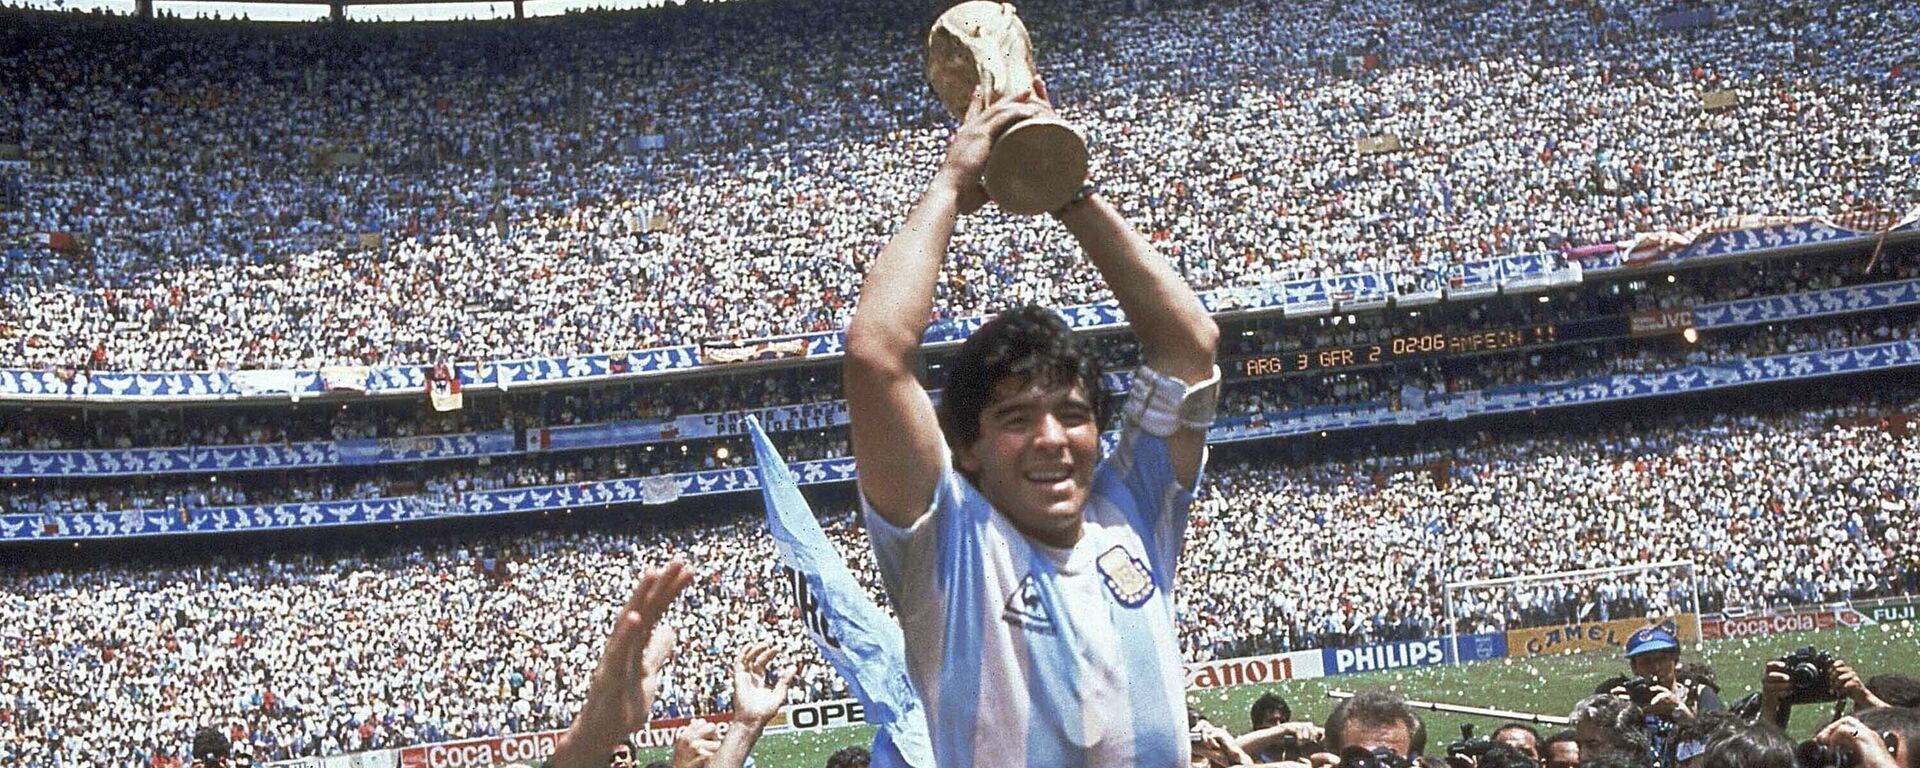 Diego Armando Maradona sostiene el trofeo de su equipo después de la victoria de Argentina por 3-2 sobre Alemania Occidental en la final de la Copa del Mundo 1986 - Sputnik Mundo, 1920, 25.03.2021